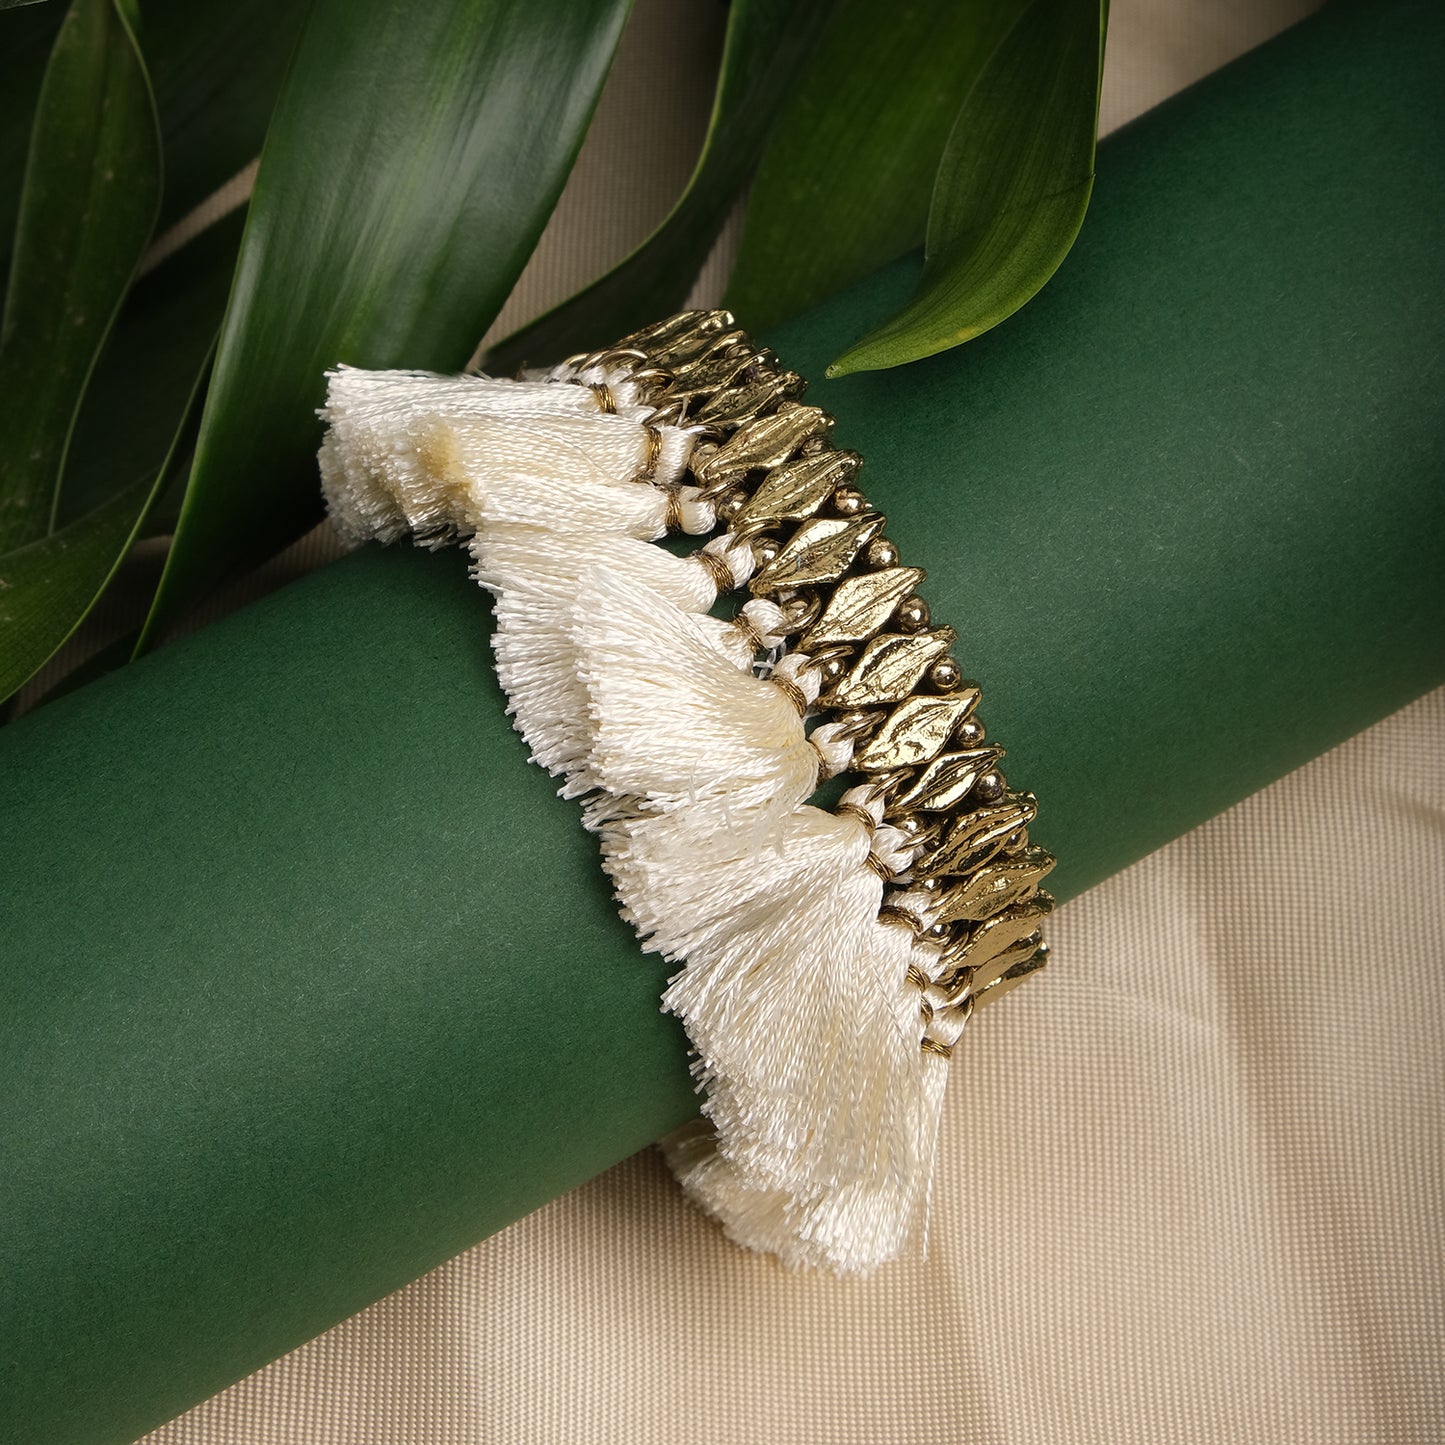 White Tassel Beads Bracelet